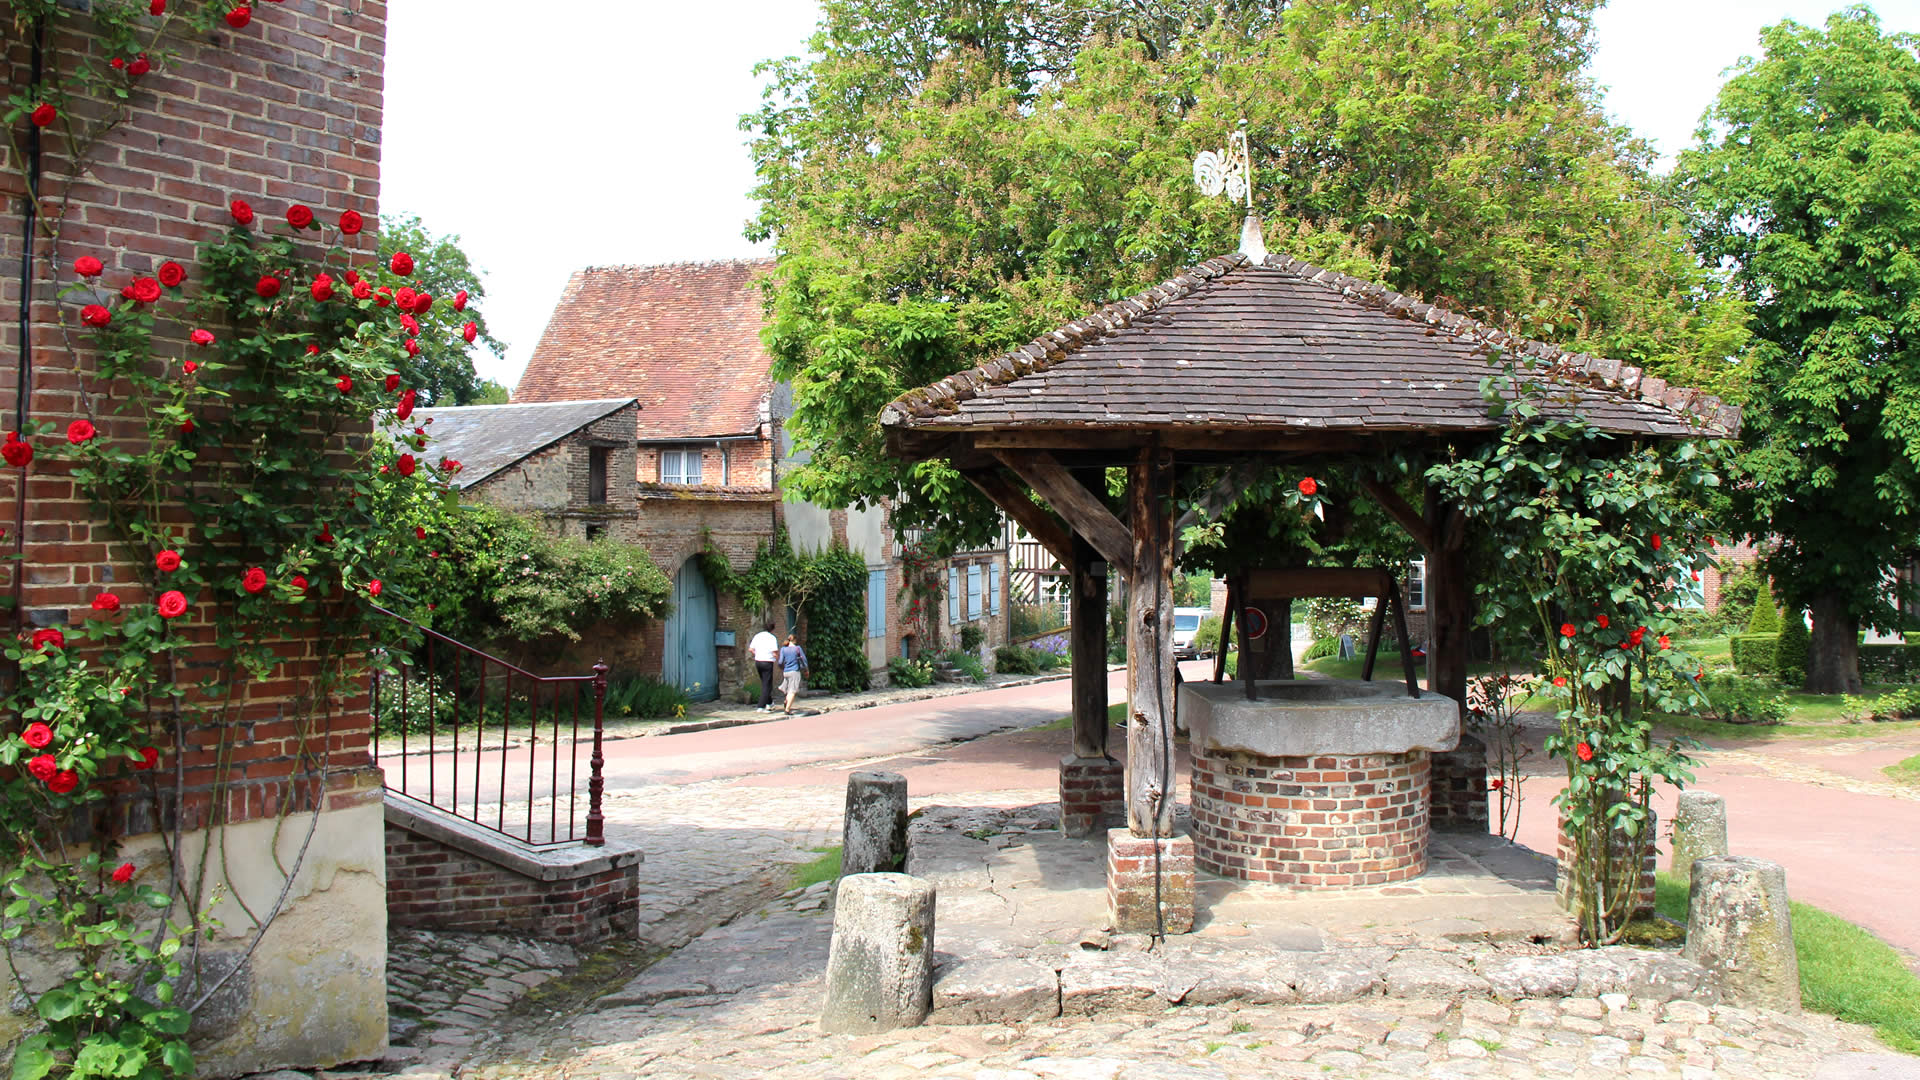 Visiter le village Gerberoy l'un des plus beaux villages de France